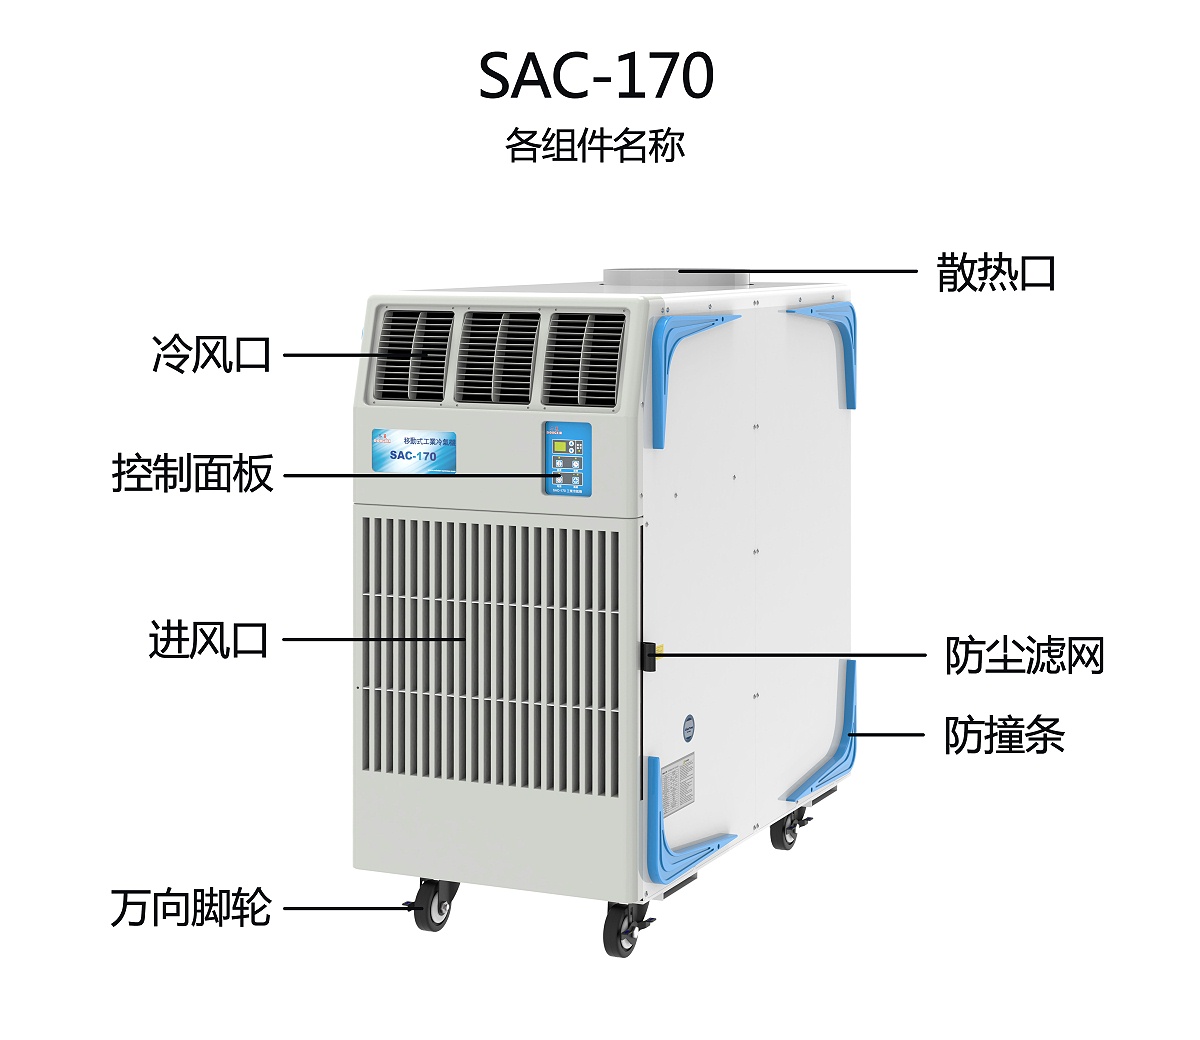 SAC-170各组件名称